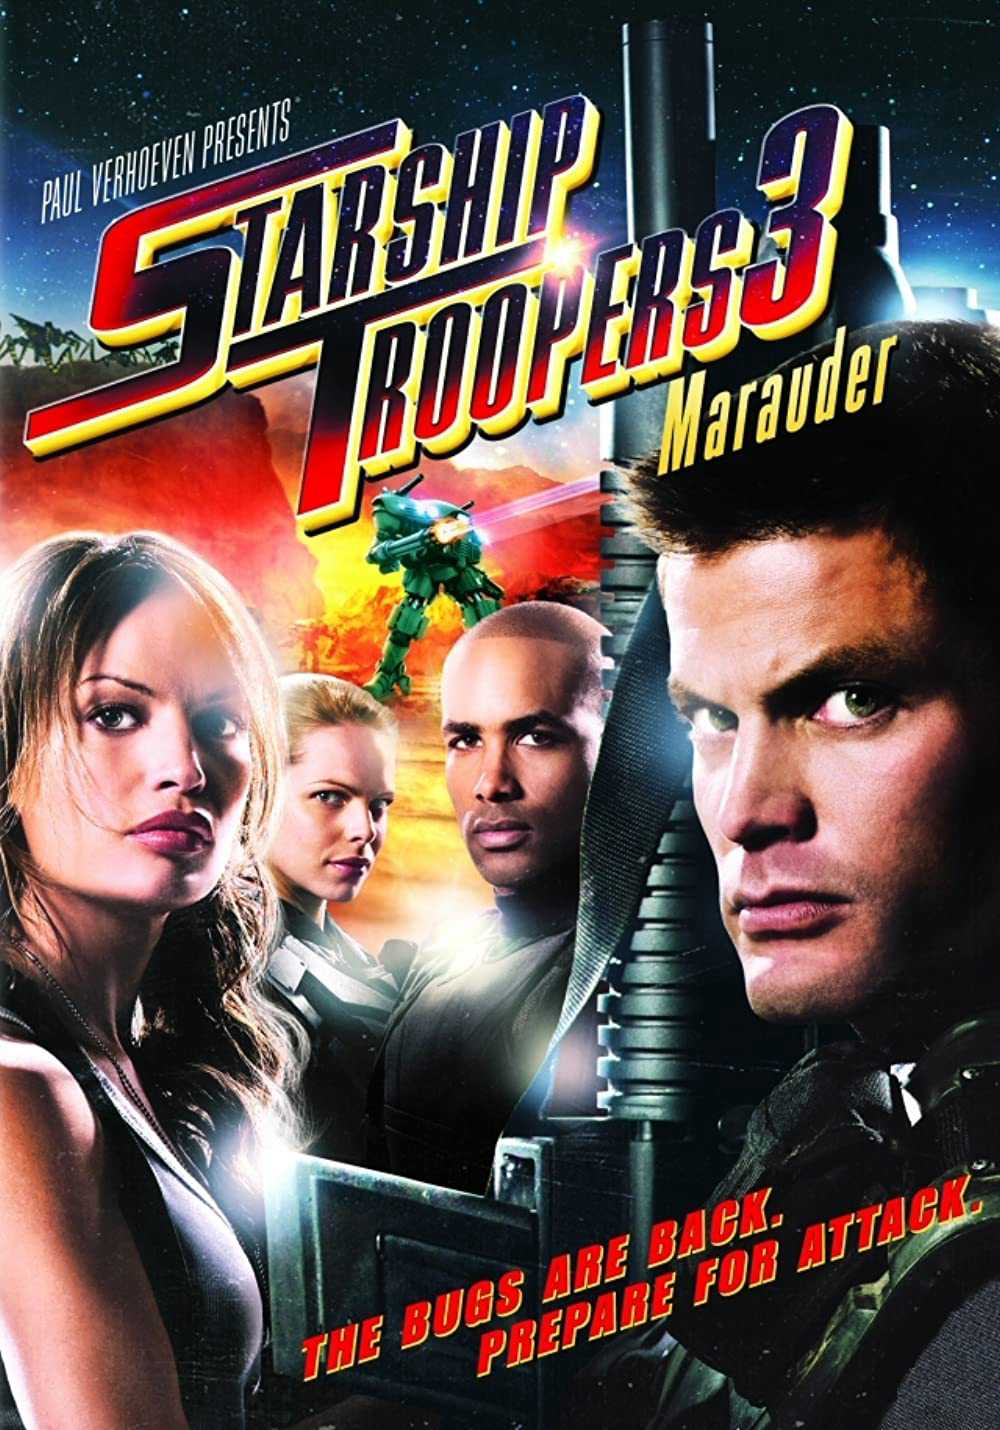 Chiến binh vũ trụ 3: Hành tinh Marauder